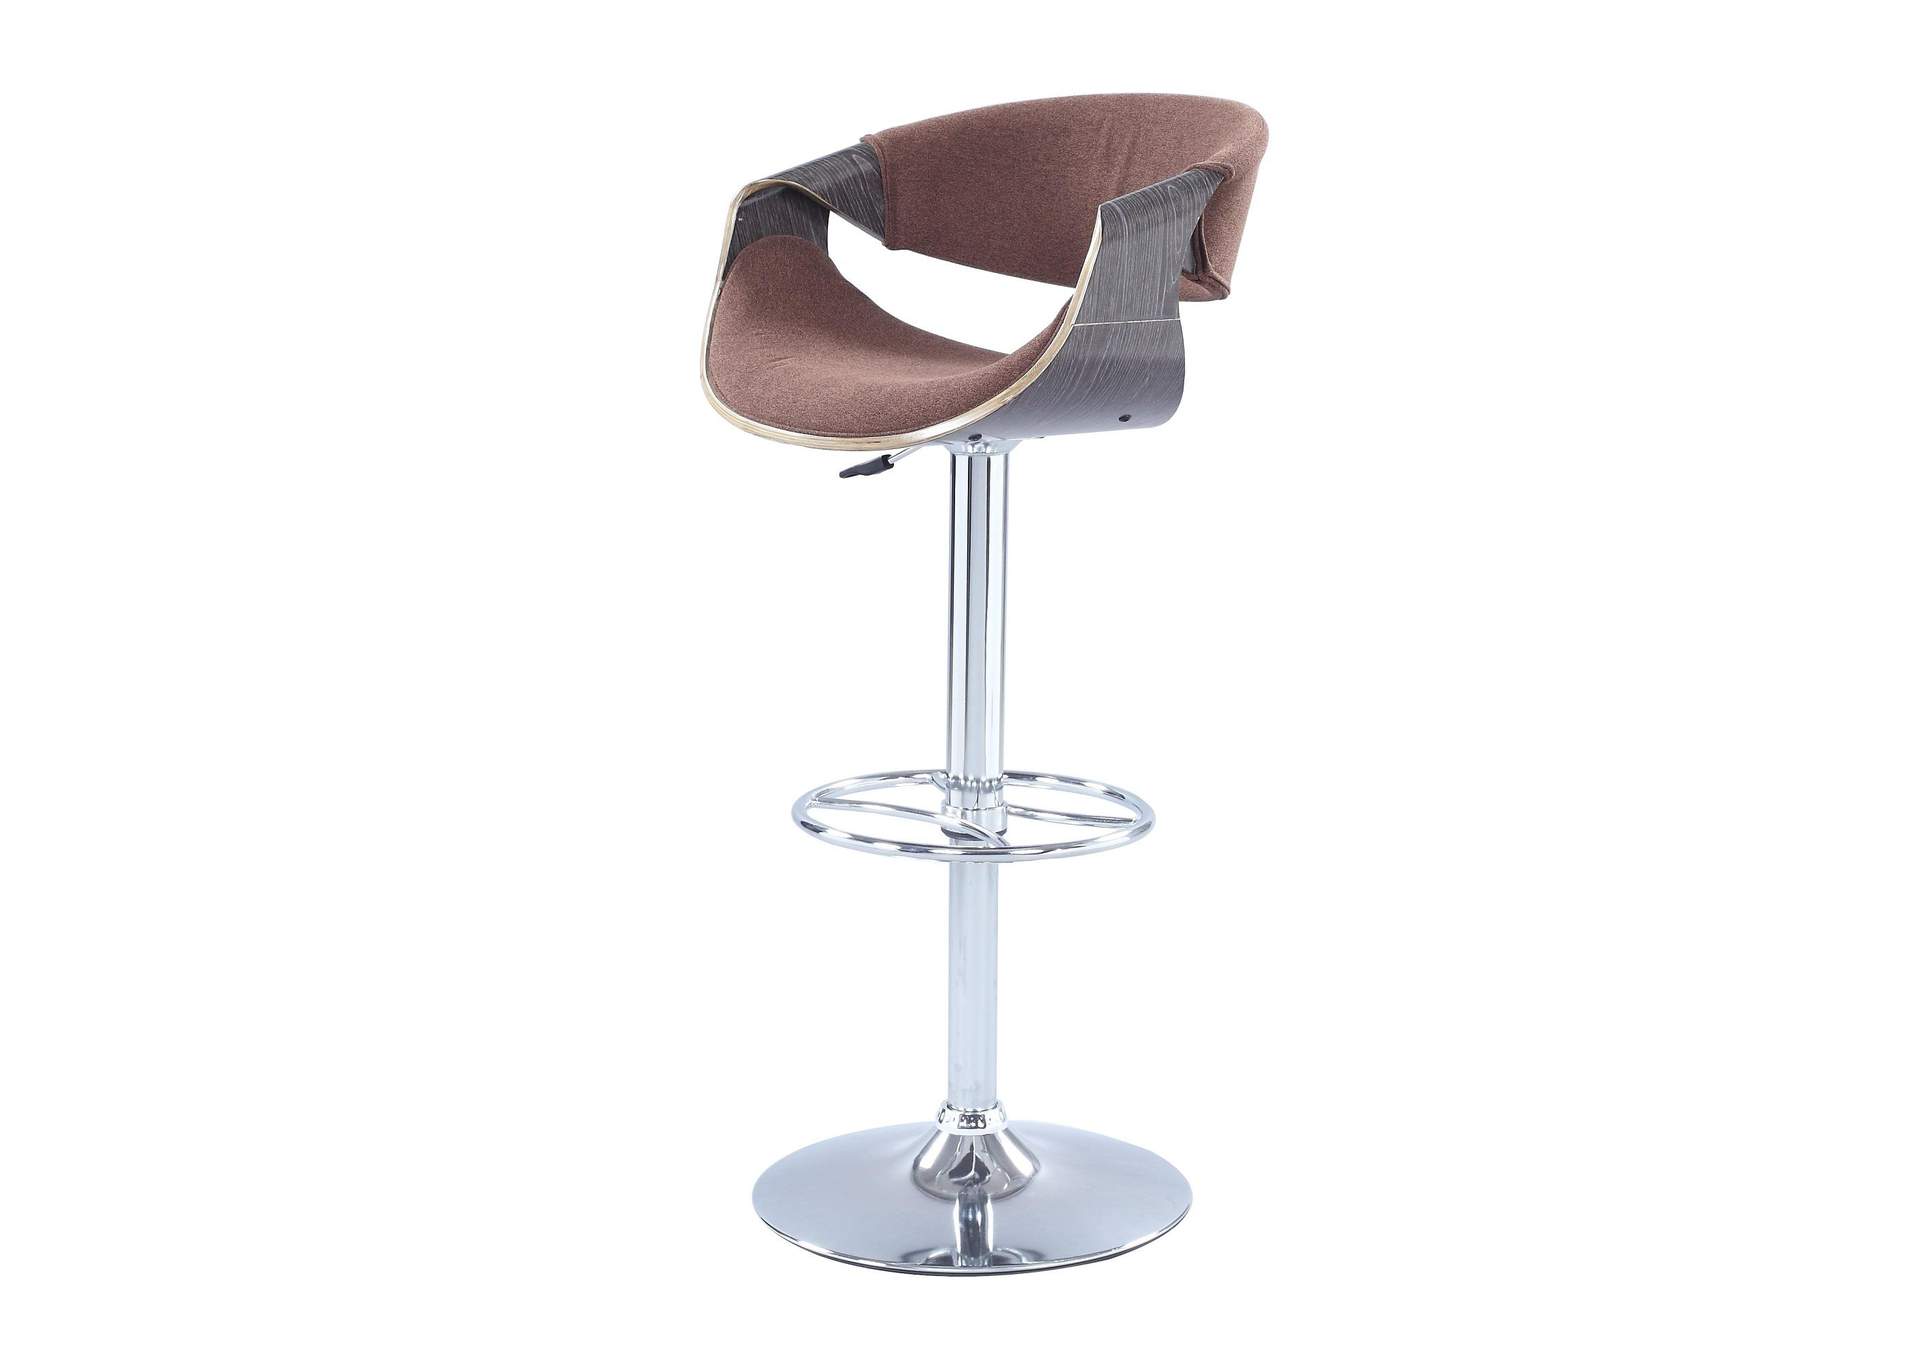 Bent Wood Saddle Seat Pneumatic-Adjustable Stool,Chintaly Imports